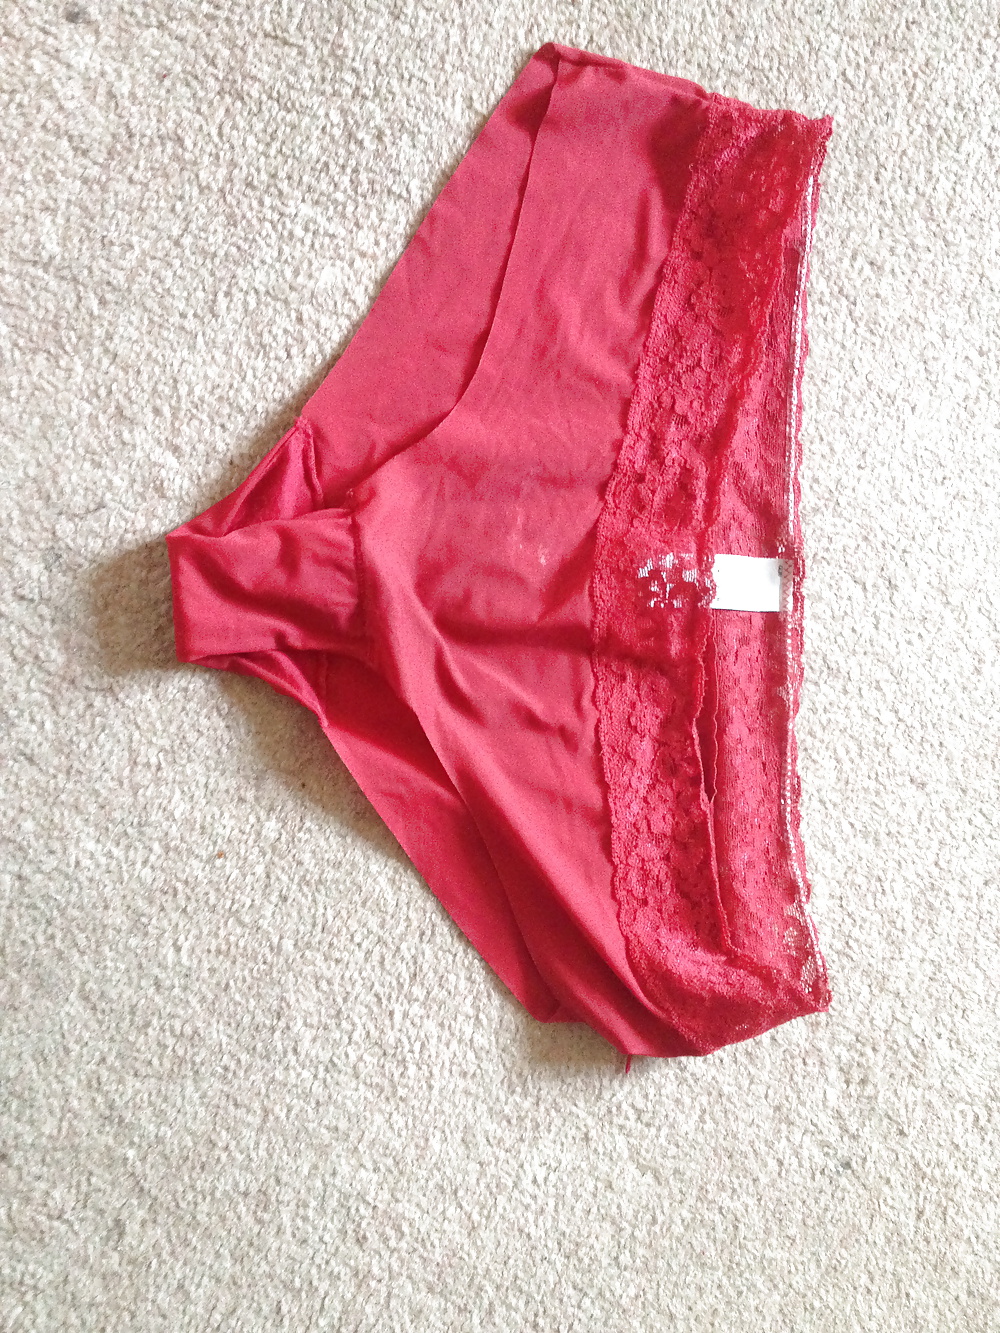 Wife's Underwear  #24276676